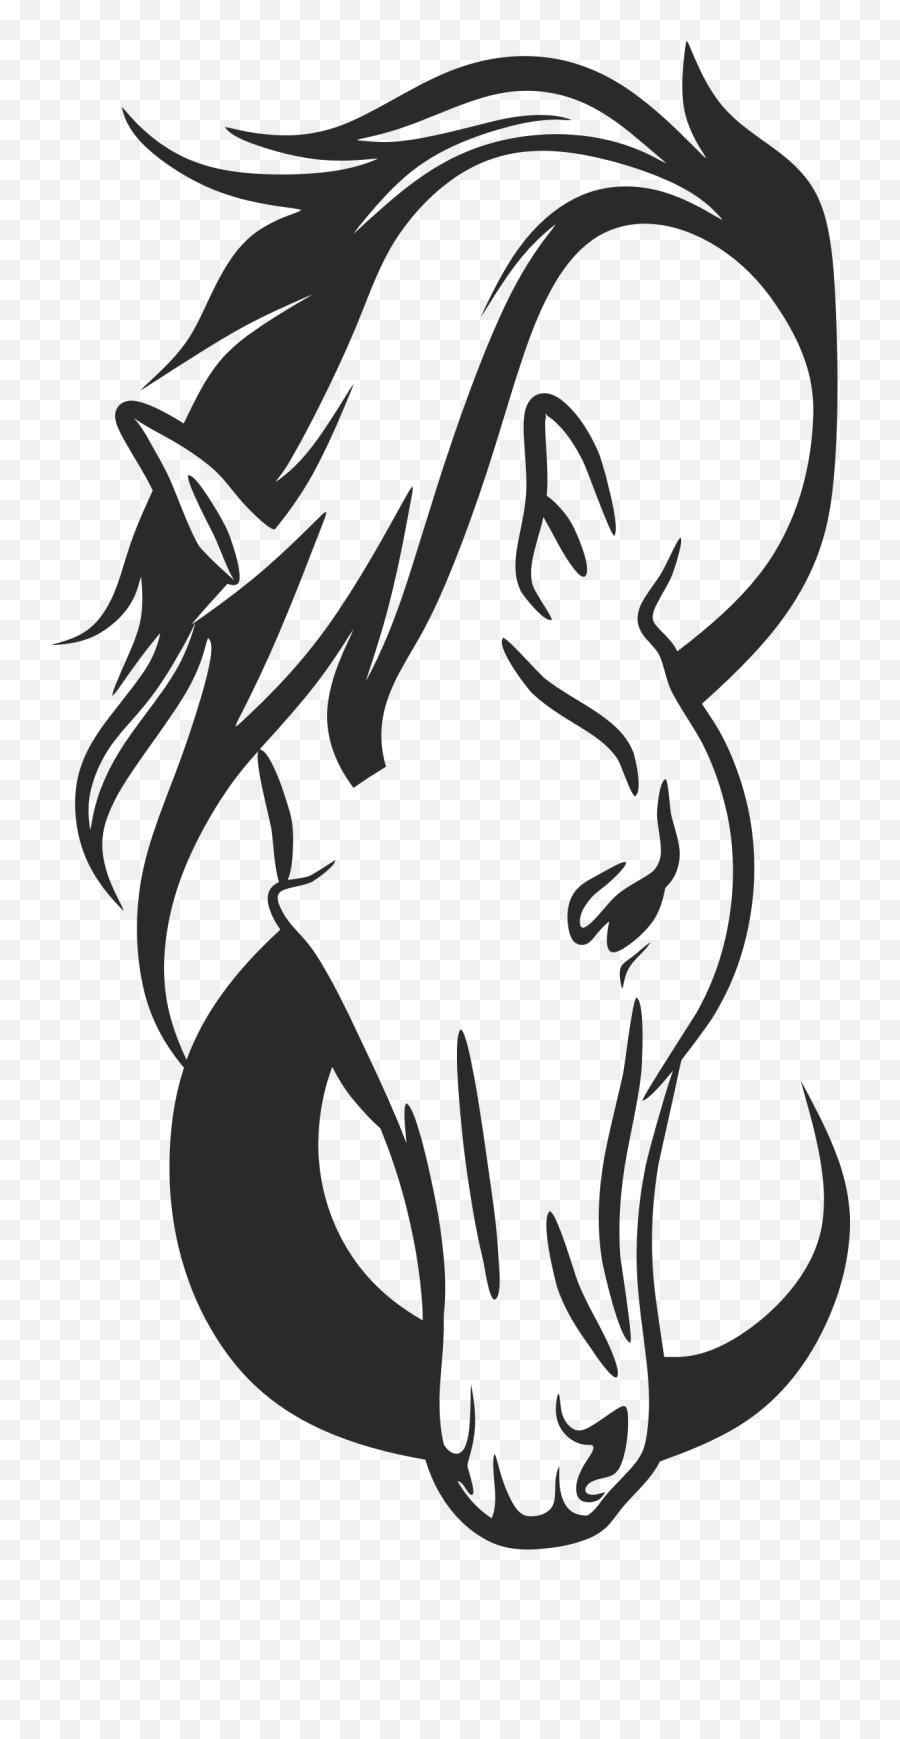 Clipart Horse Head Silhouette - Horse Head Silhouette Svg Emoji,Horse Head Clipart